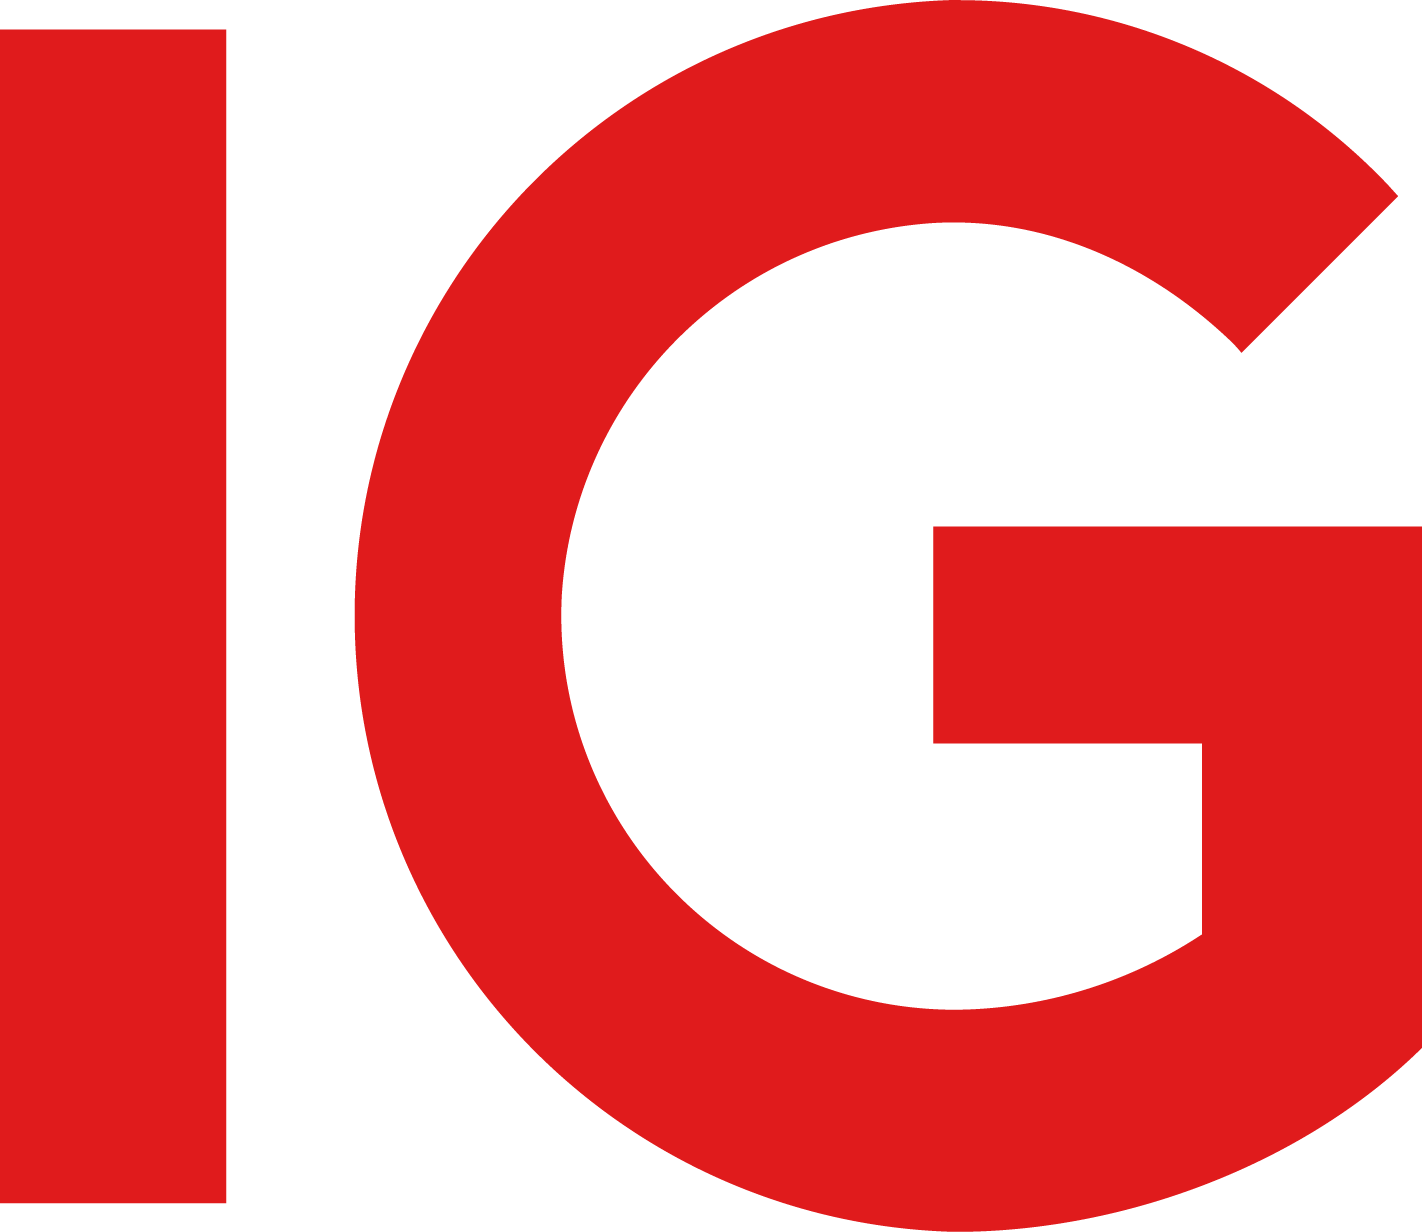 IG Group Logo png